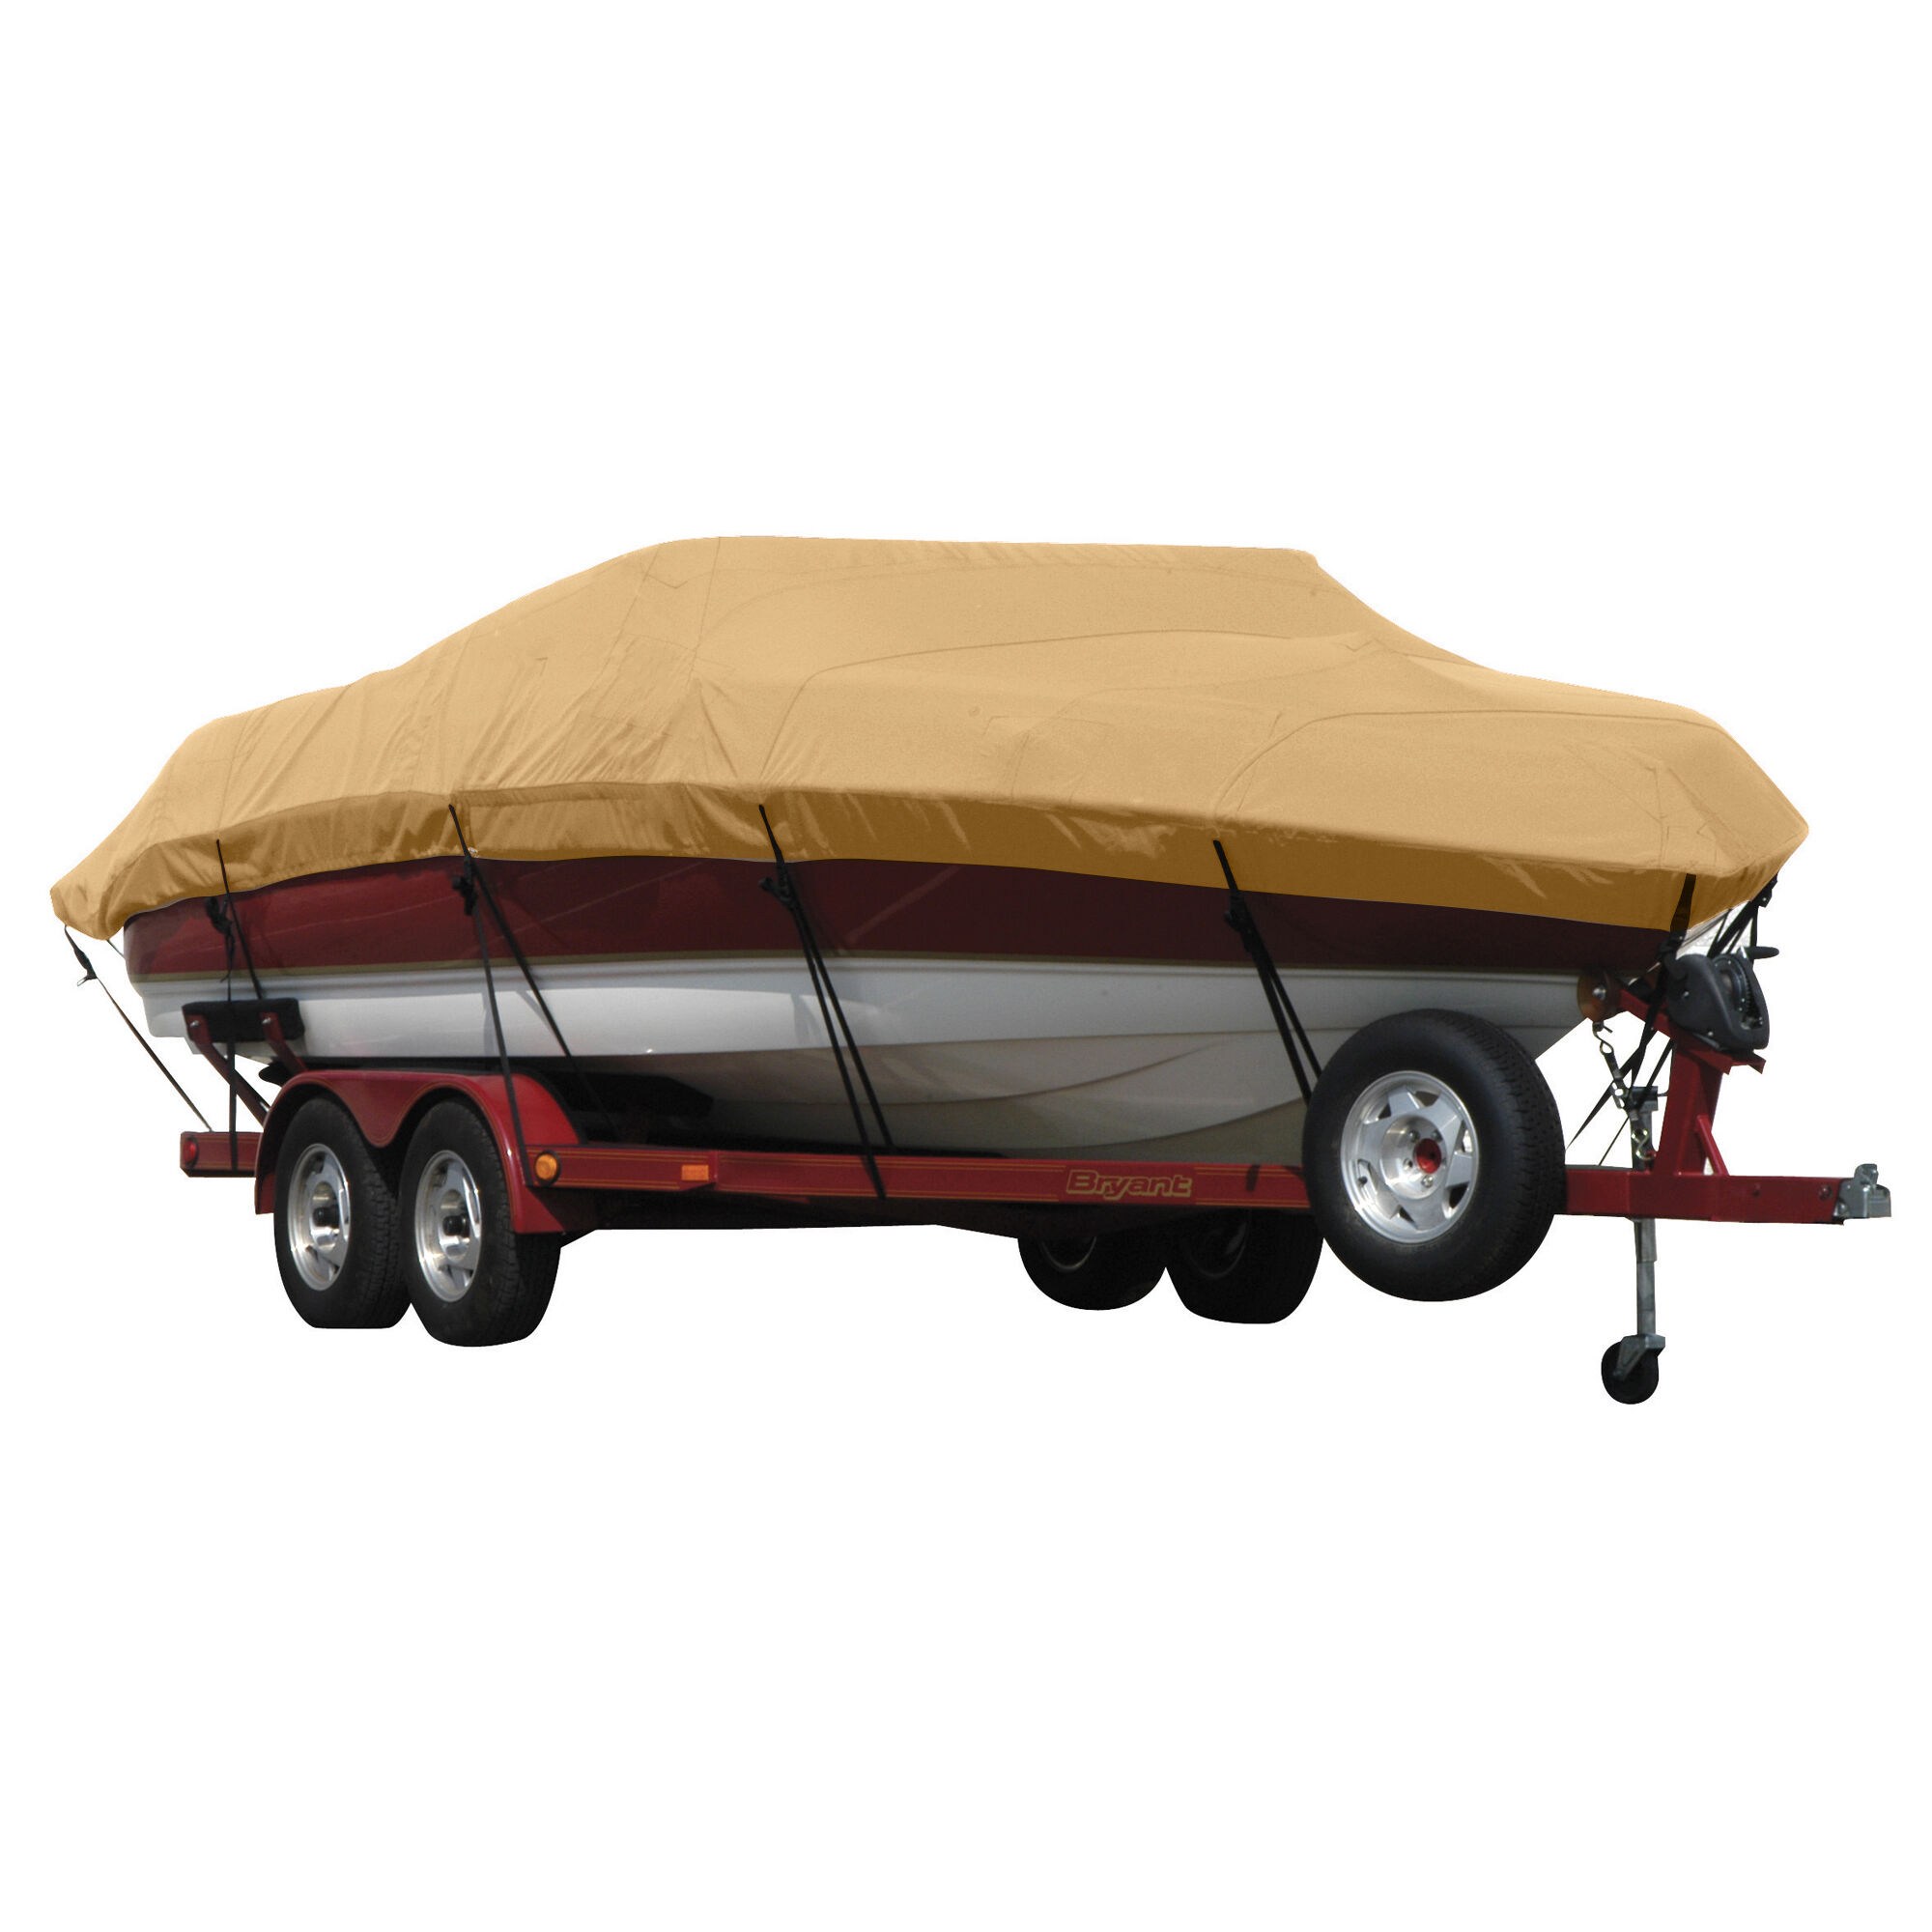 Covermate Exact Fit Sunbrella Boat Cover for Seaswirl Striper 2120 Striper 2120 Cuddy Hard Top No Pulpit I/O. Toast